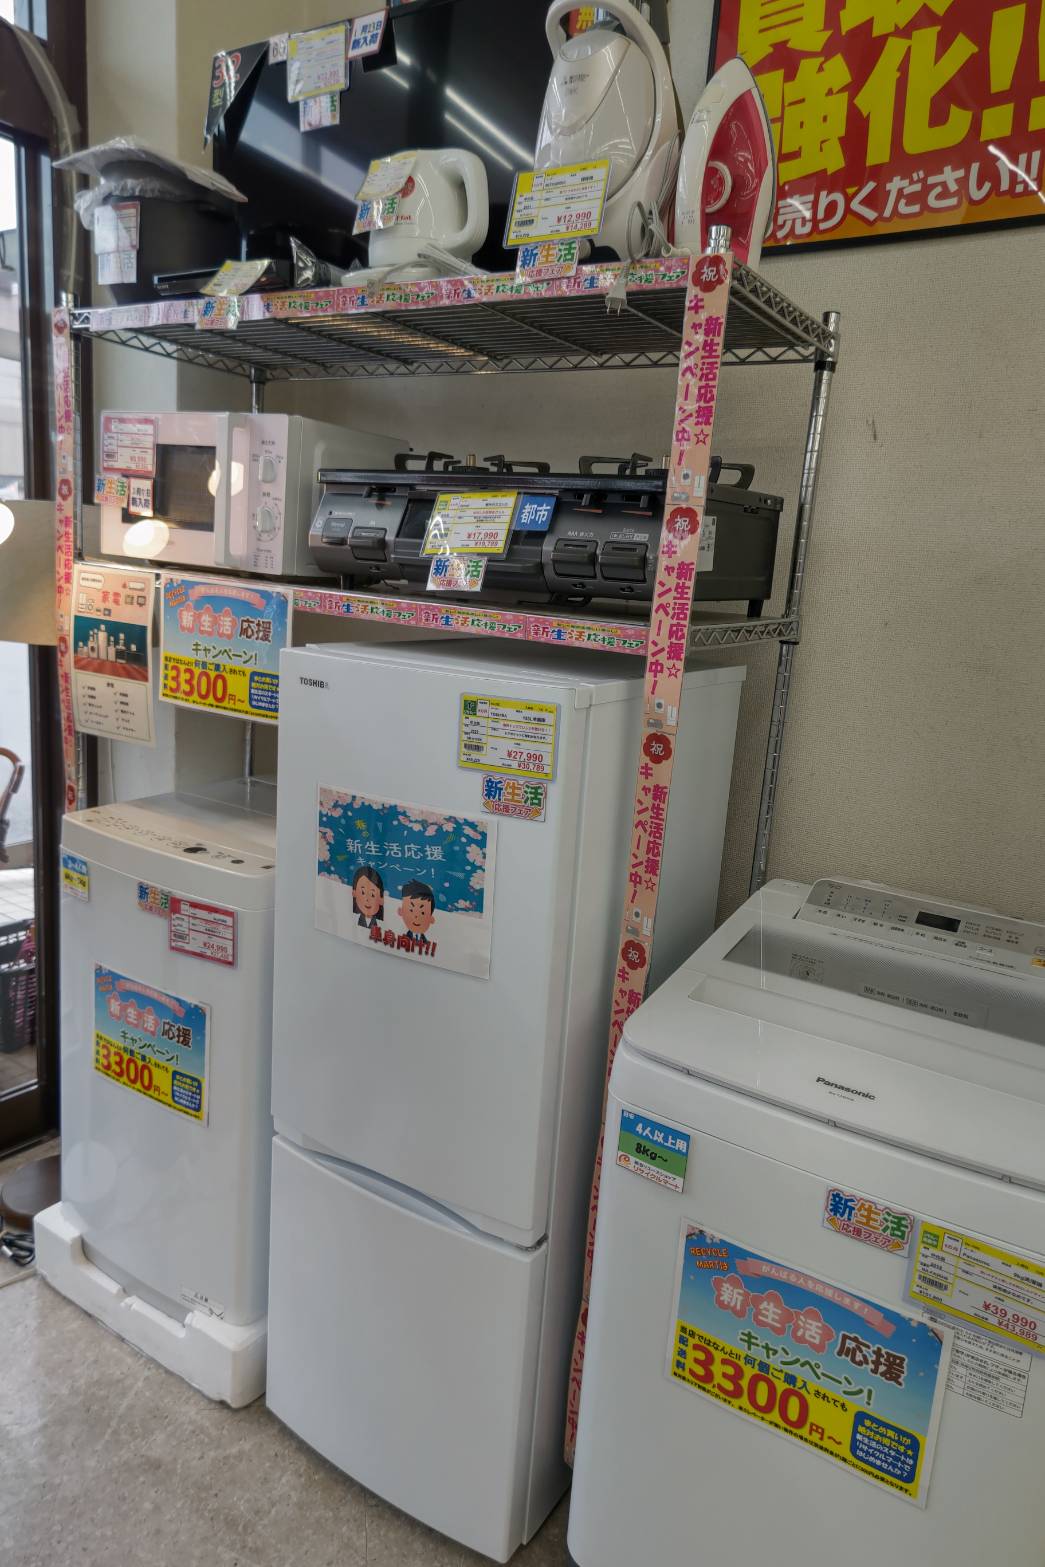 リサイクルマート大野城 17年製 Abitelax 205ℓ冷凍庫 - キッチン家電